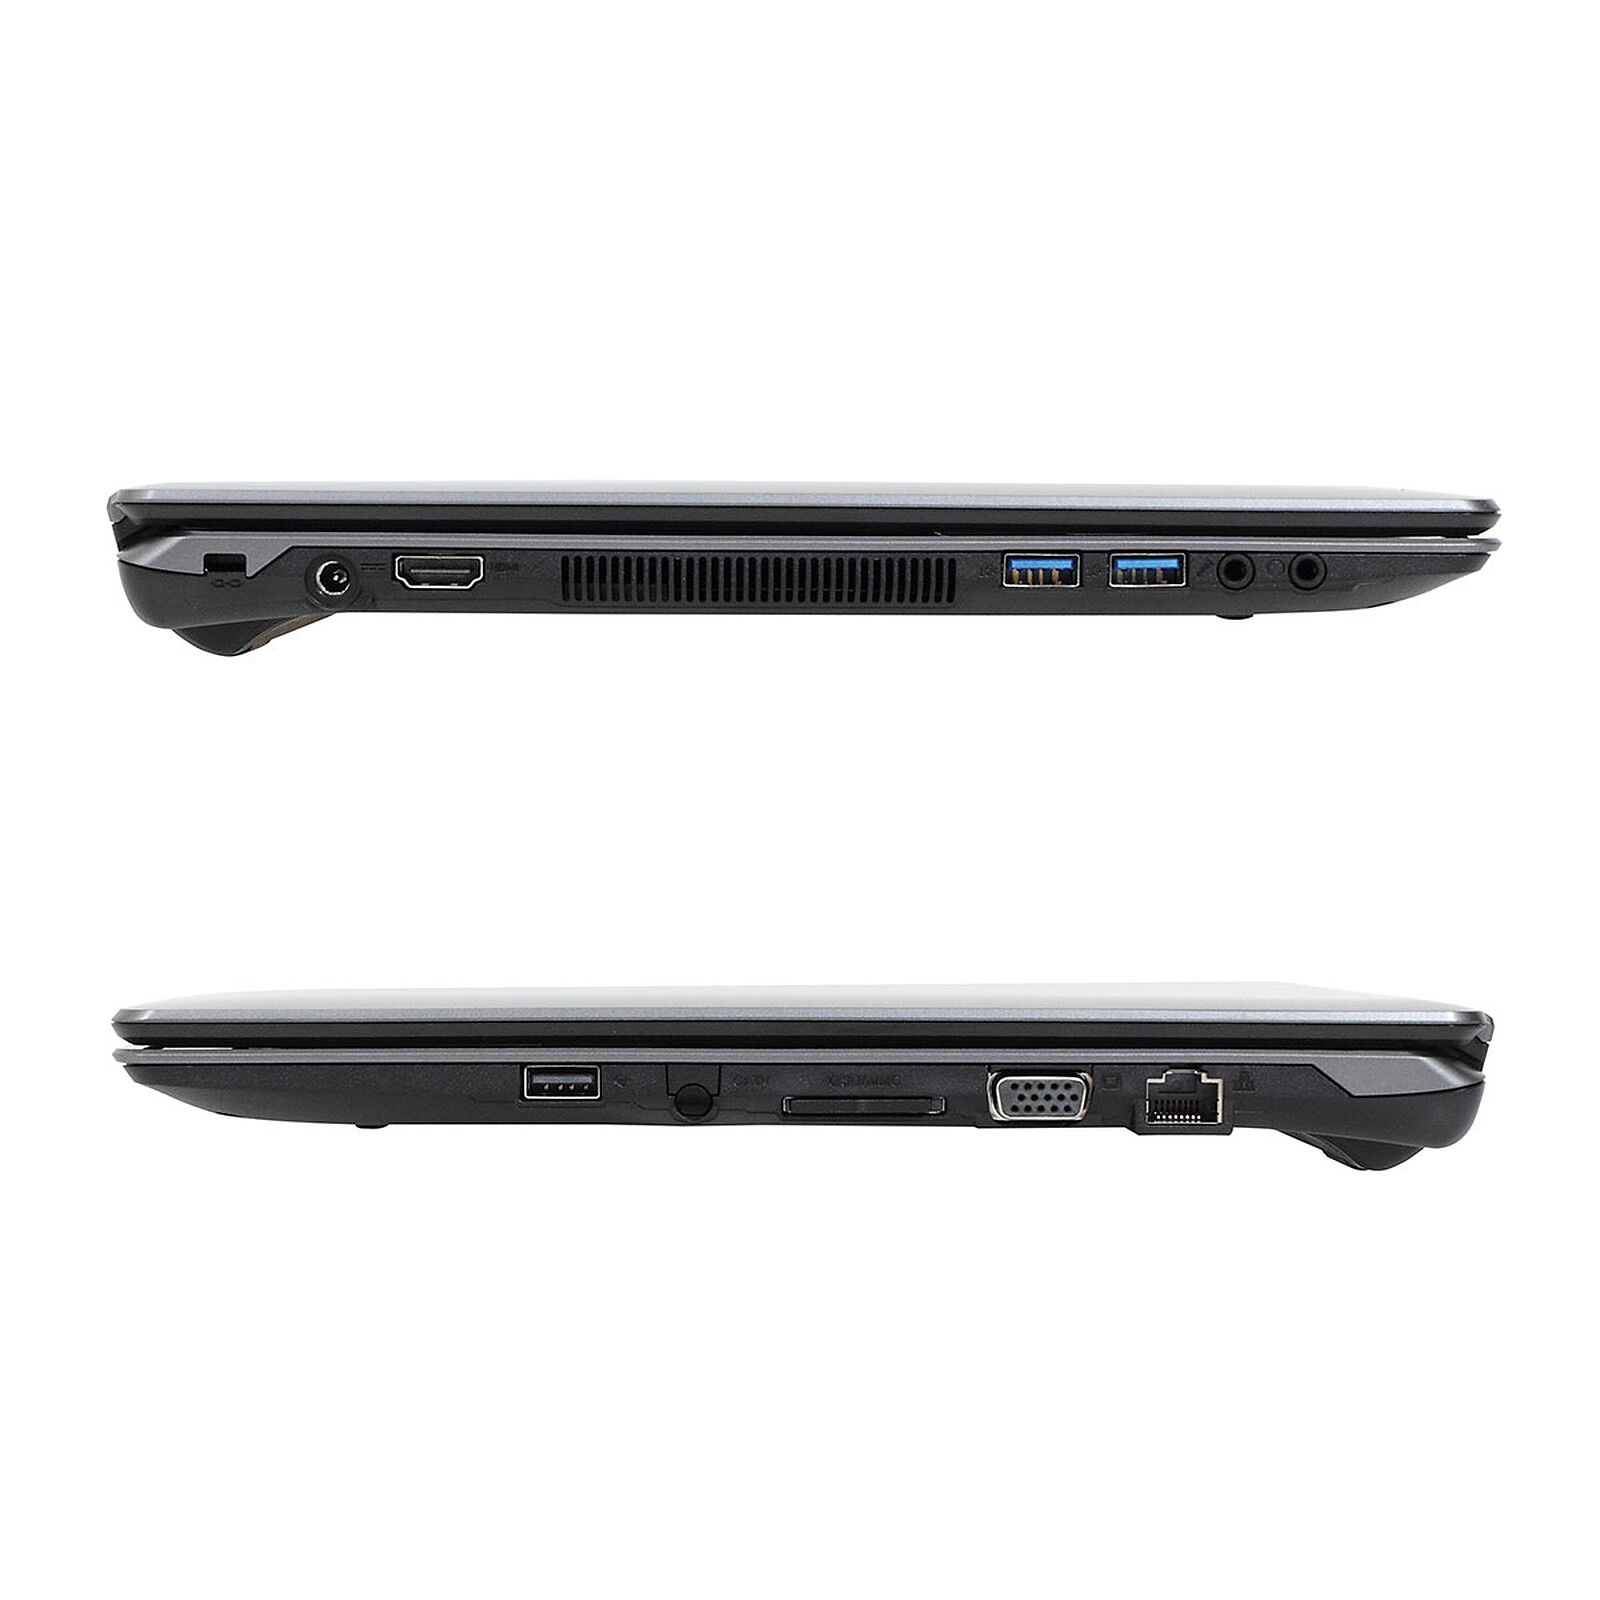 ASUS EeeBook E402SA-WX027T Bleu - PC portable - Garantie 3 ans LDLC